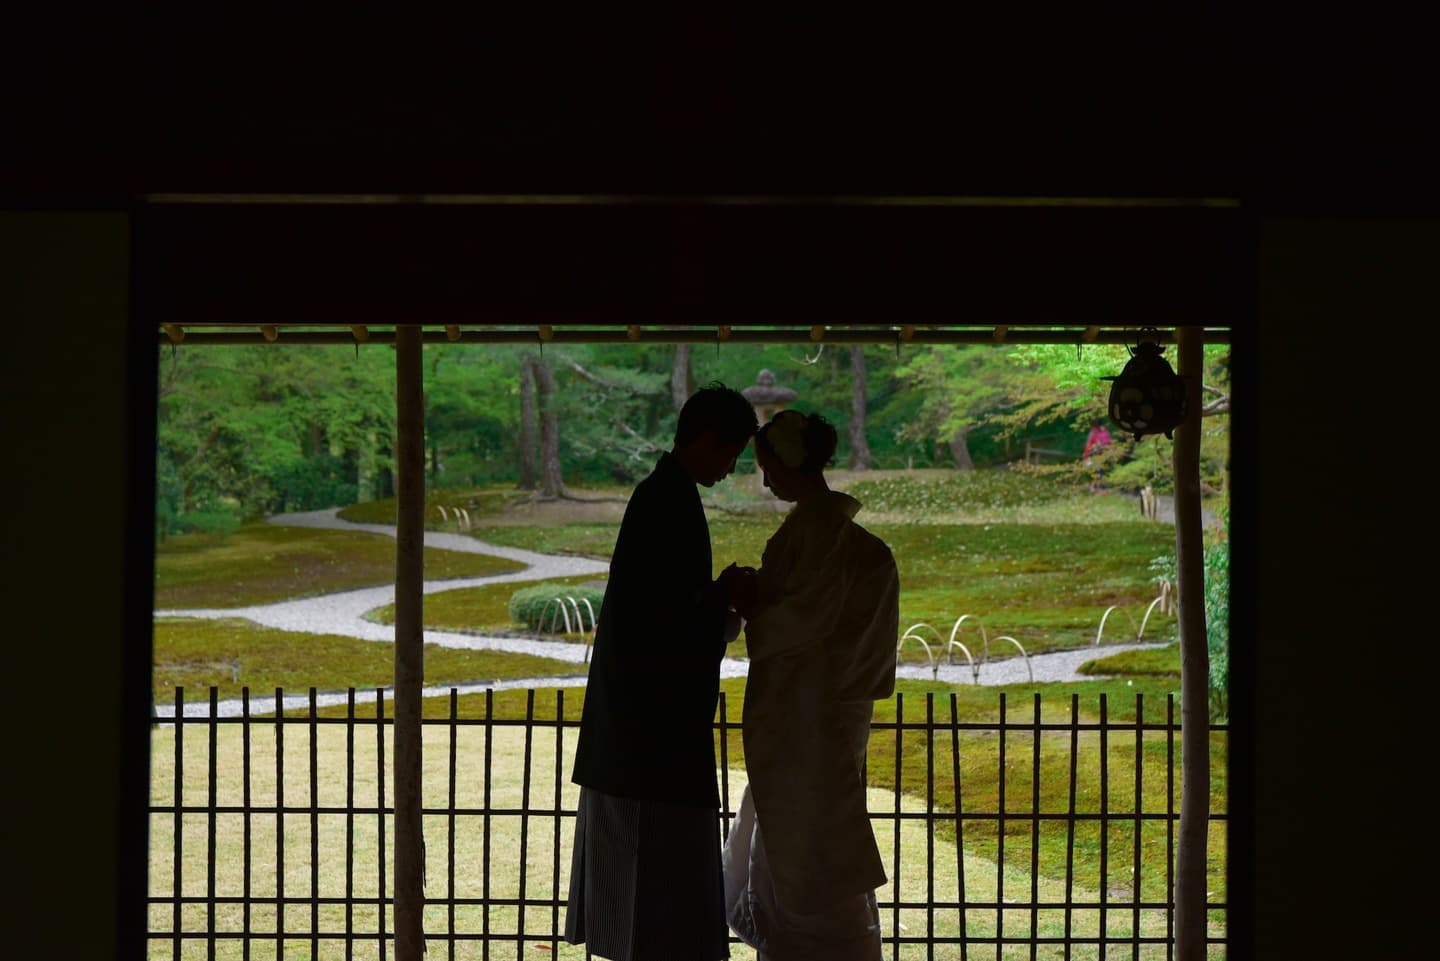 和室や日本庭園と茶室での前撮りの新郎新婦の写真